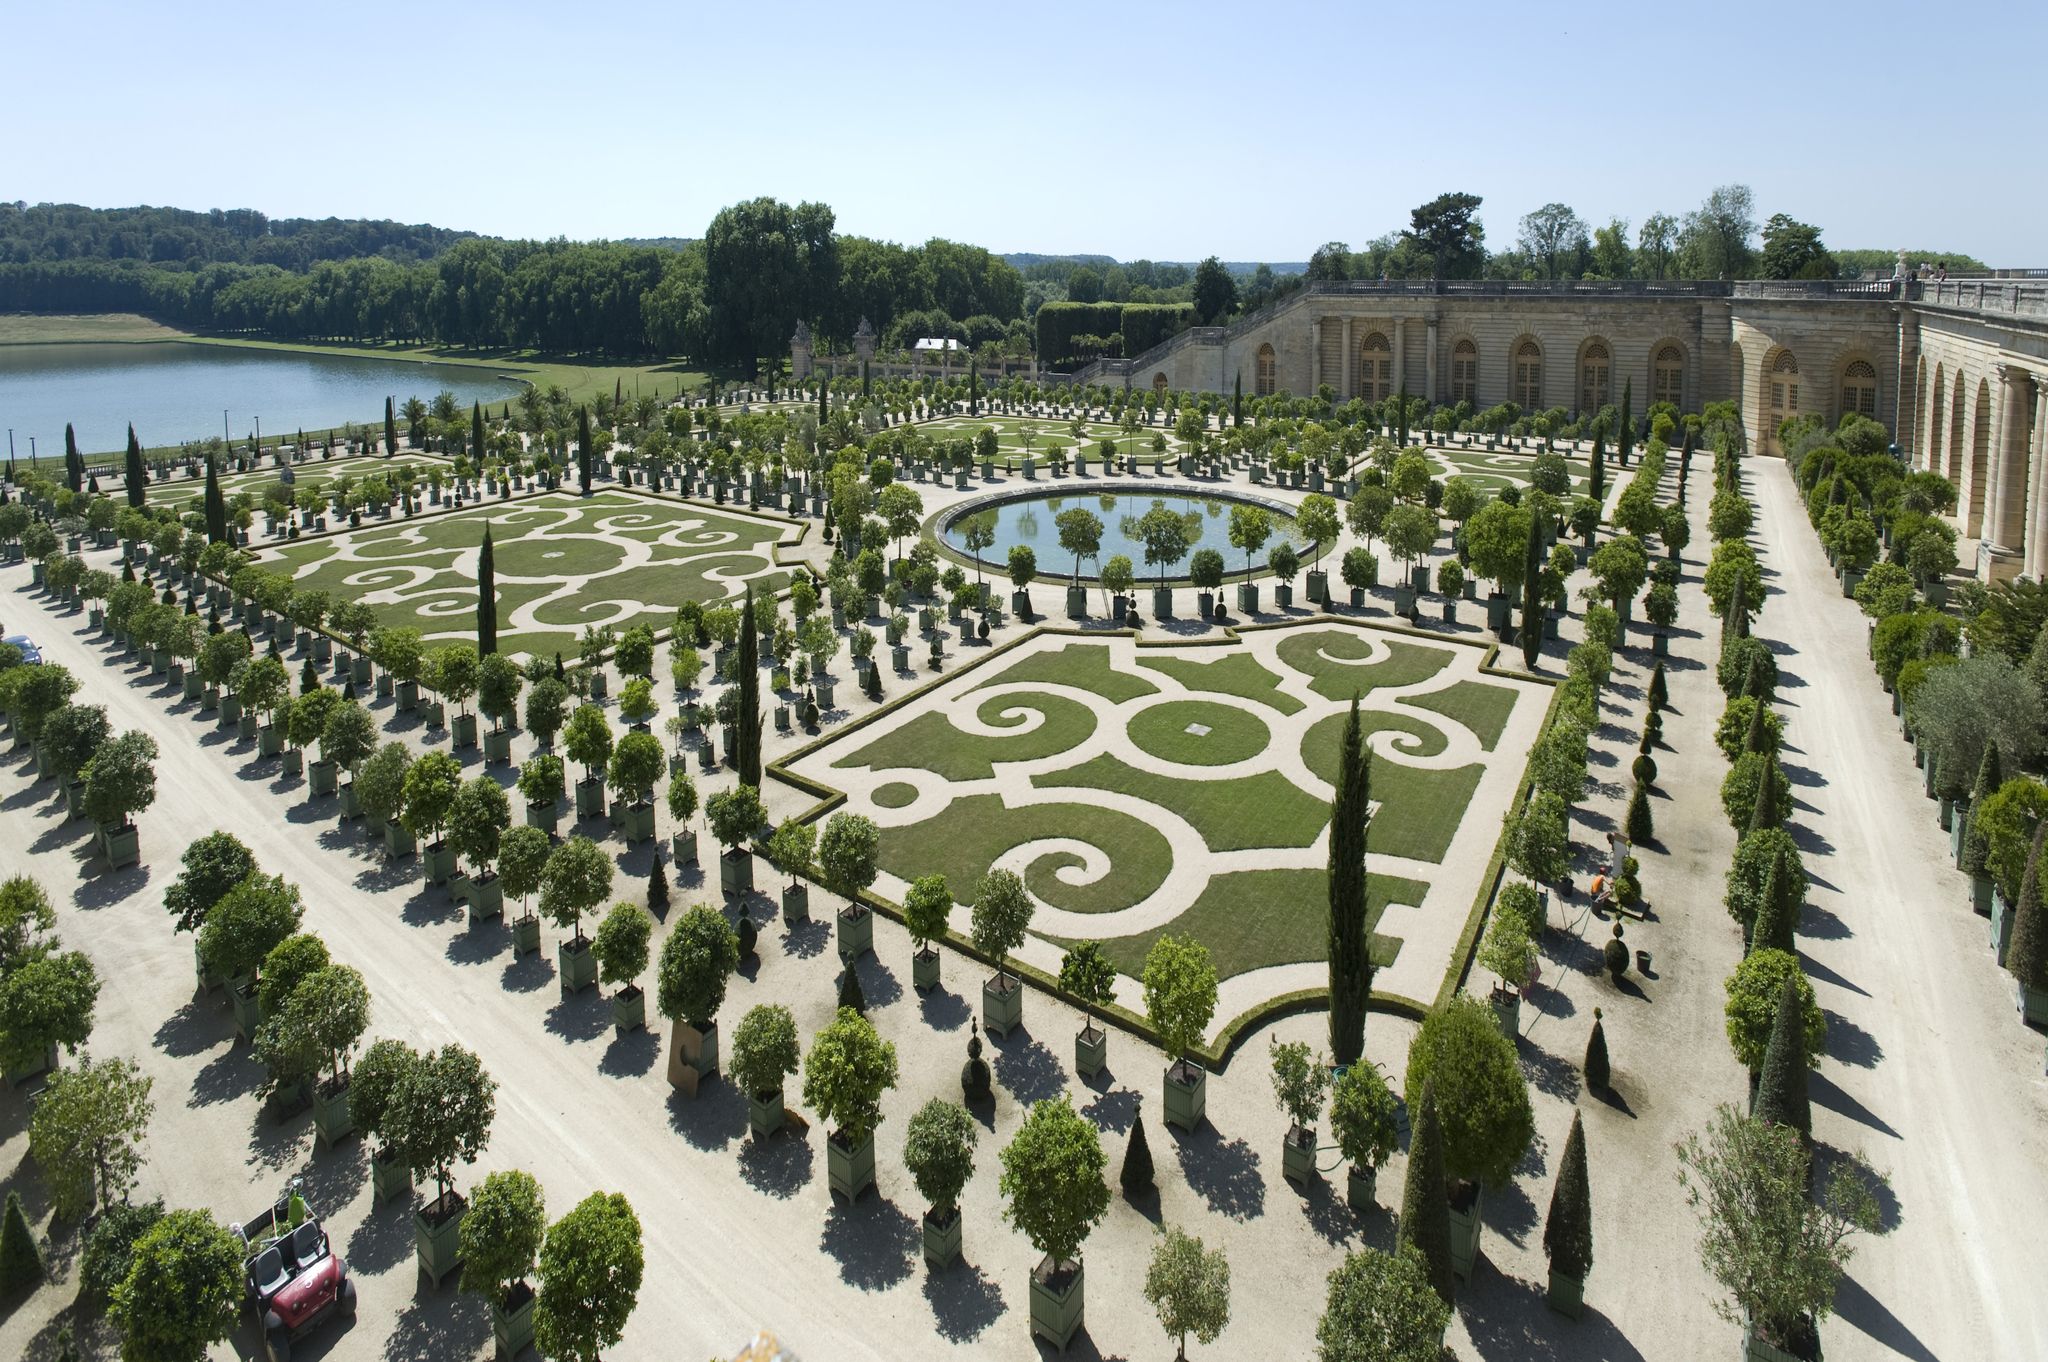 Ανάκτορο των Βερσαλλιών (Château de Versailles) - Παρίσι | TopTraveller